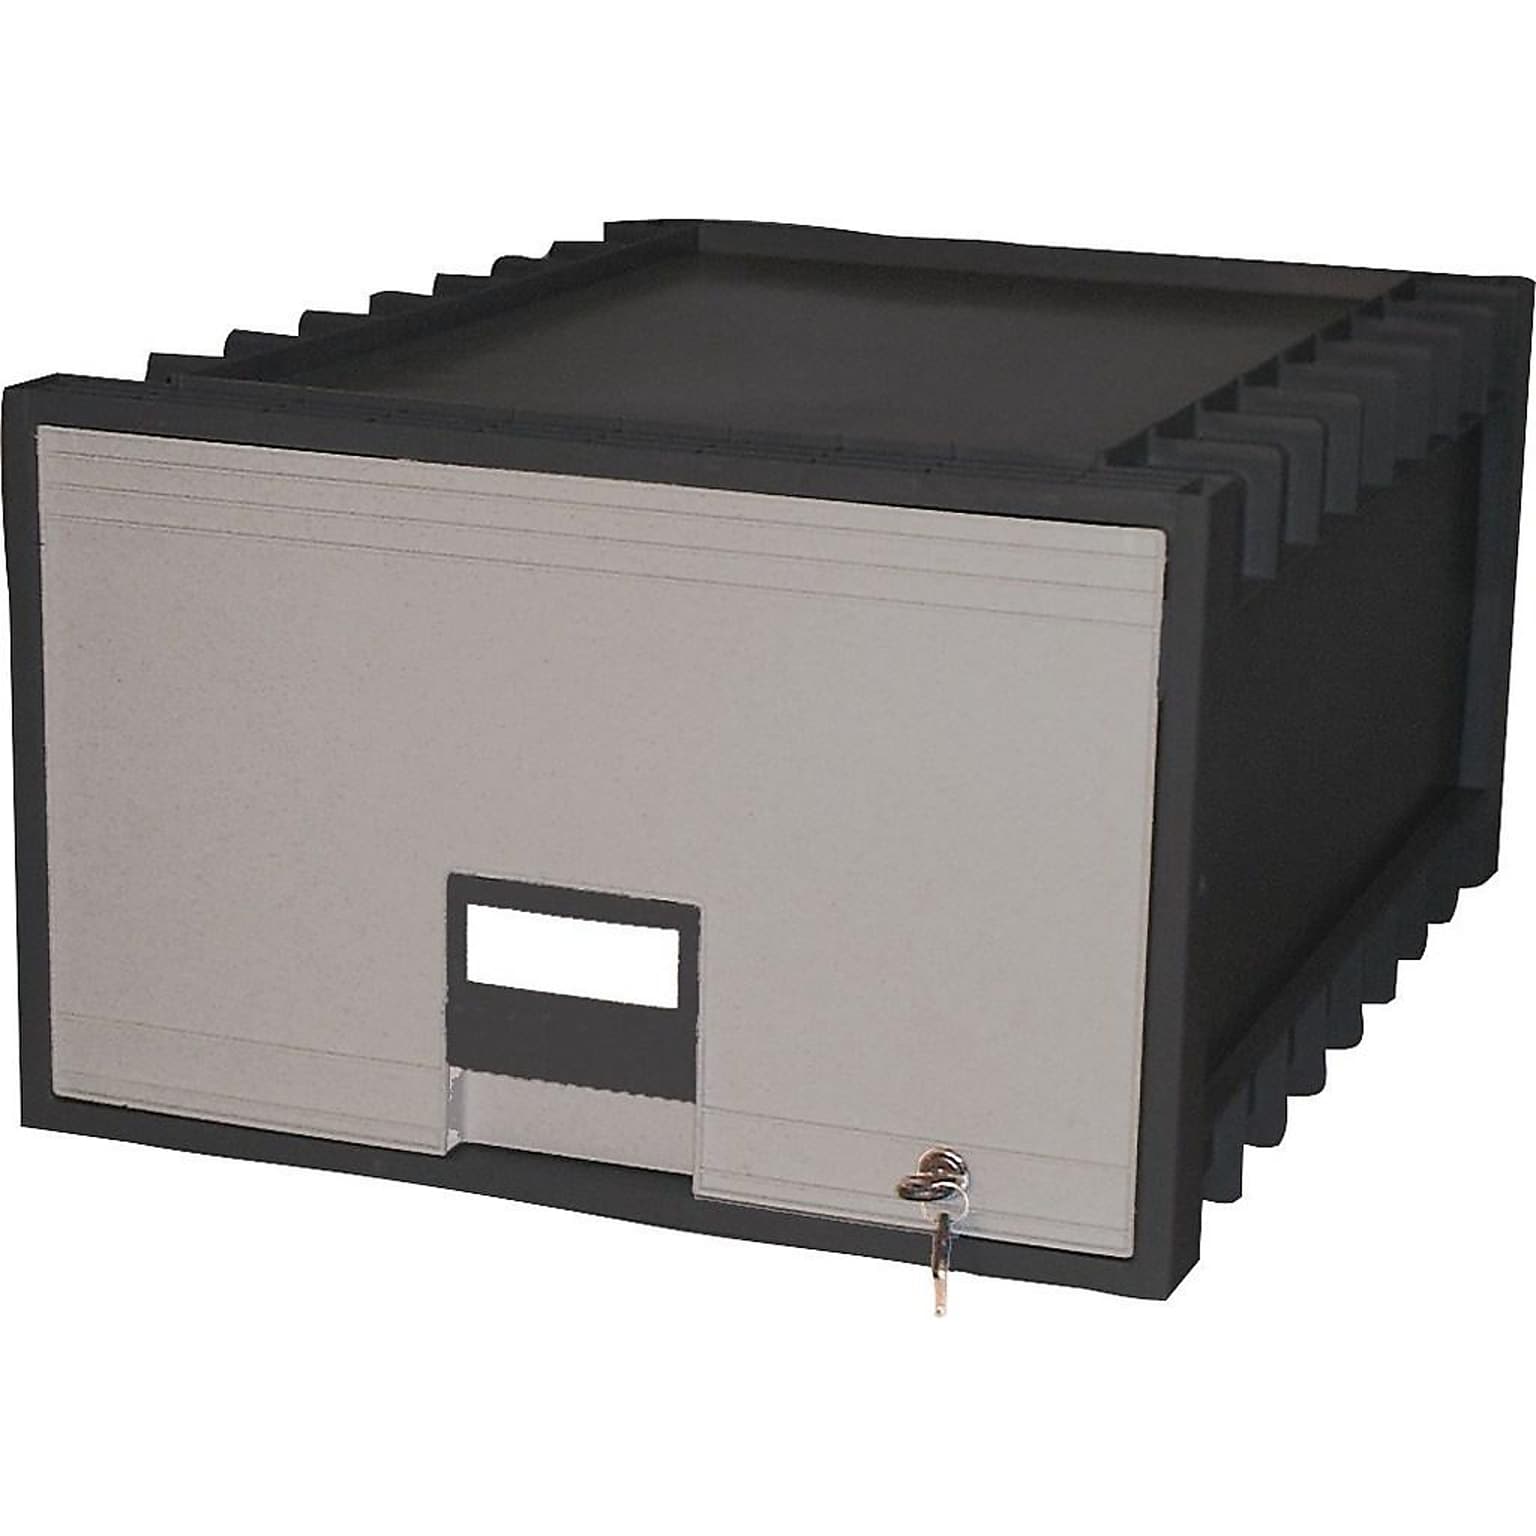 Storex Stackable Storage Drawer, Black/Gray (61155U01C)